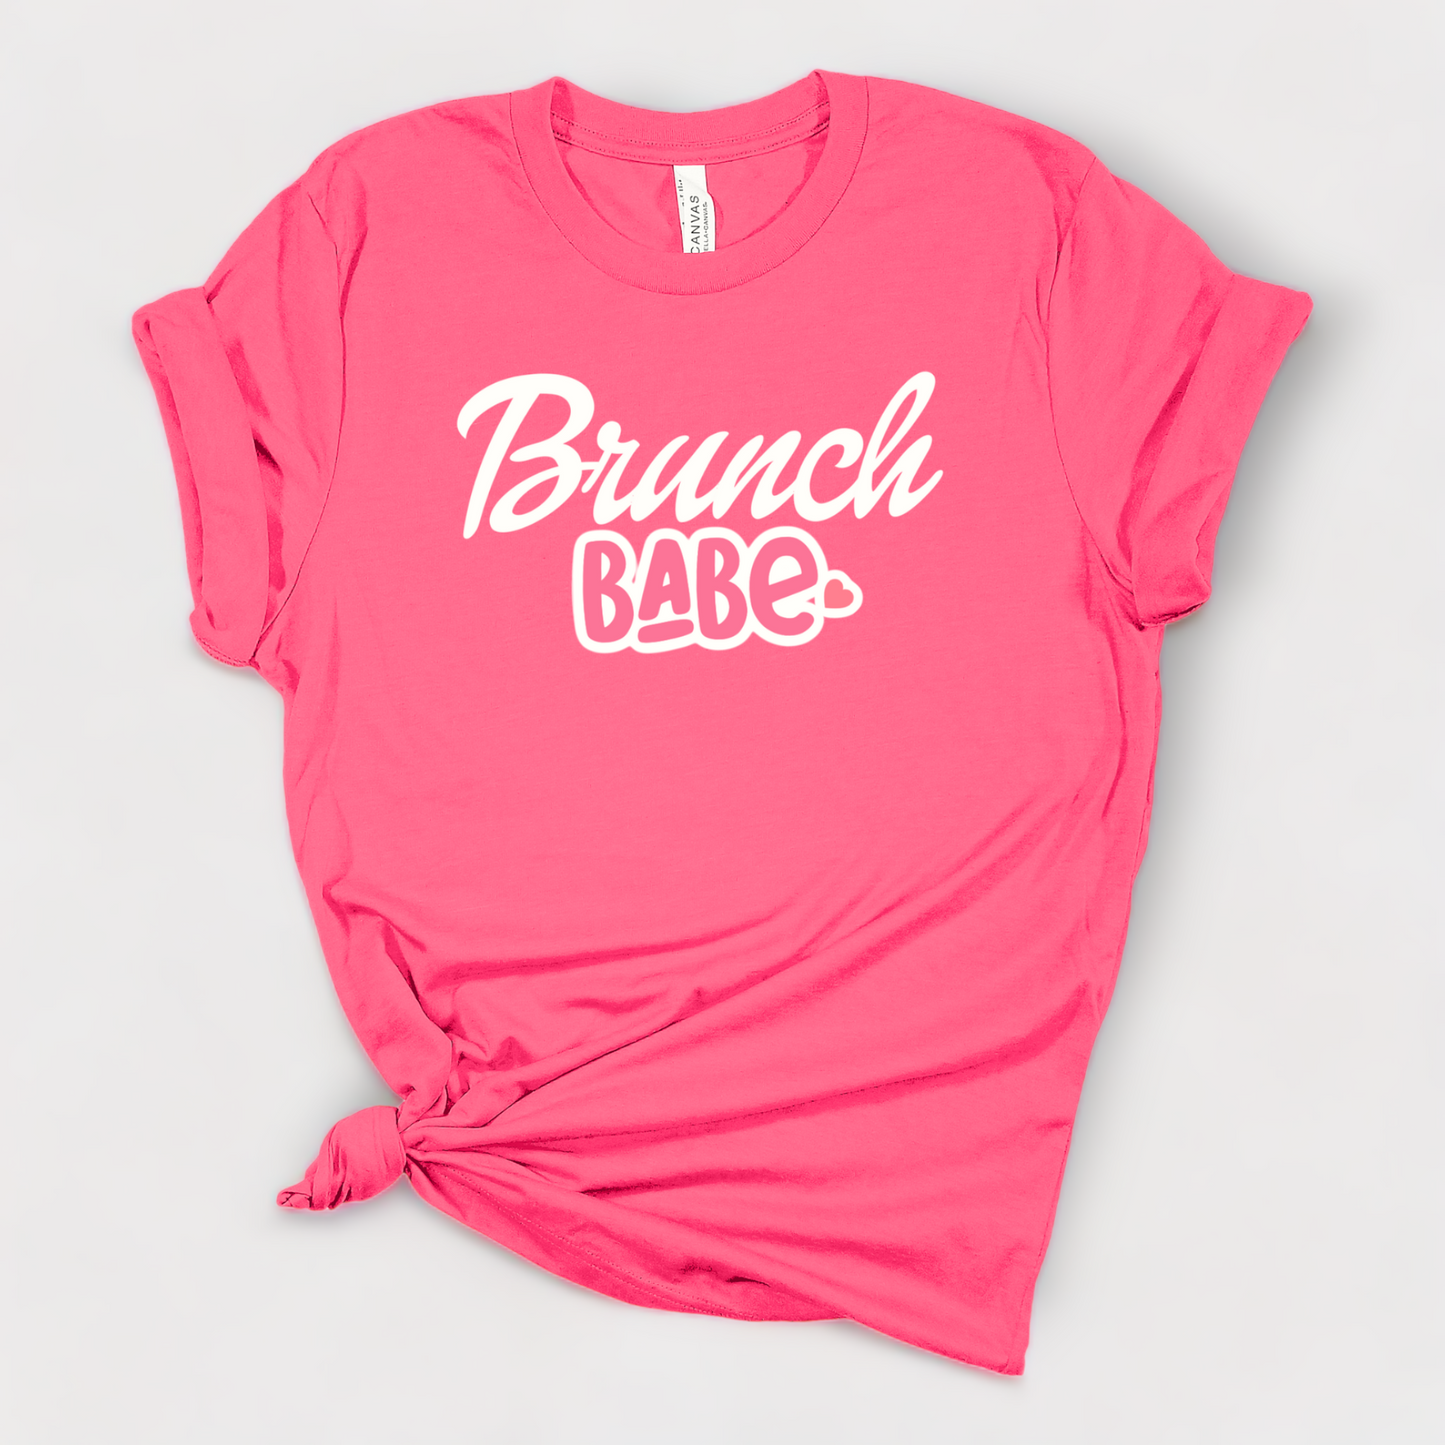 Brunch Babe - Short Sleeve Shirt